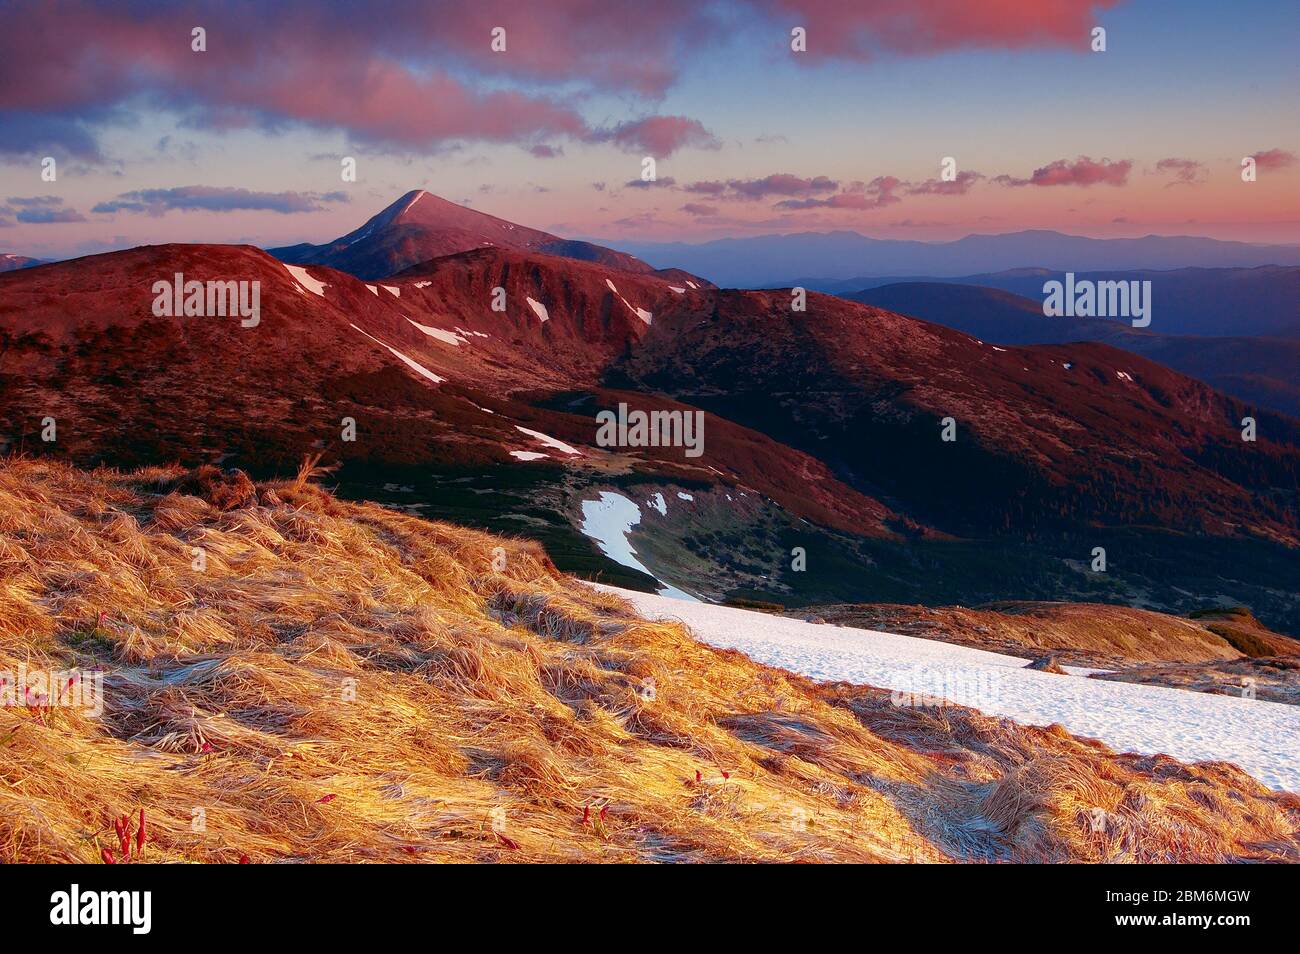 Matin en montagne. Sur une photo, la plus haute montagne des Carpates ukrainiens - Goverla de 2061 mètres est représentée. Banque D'Images